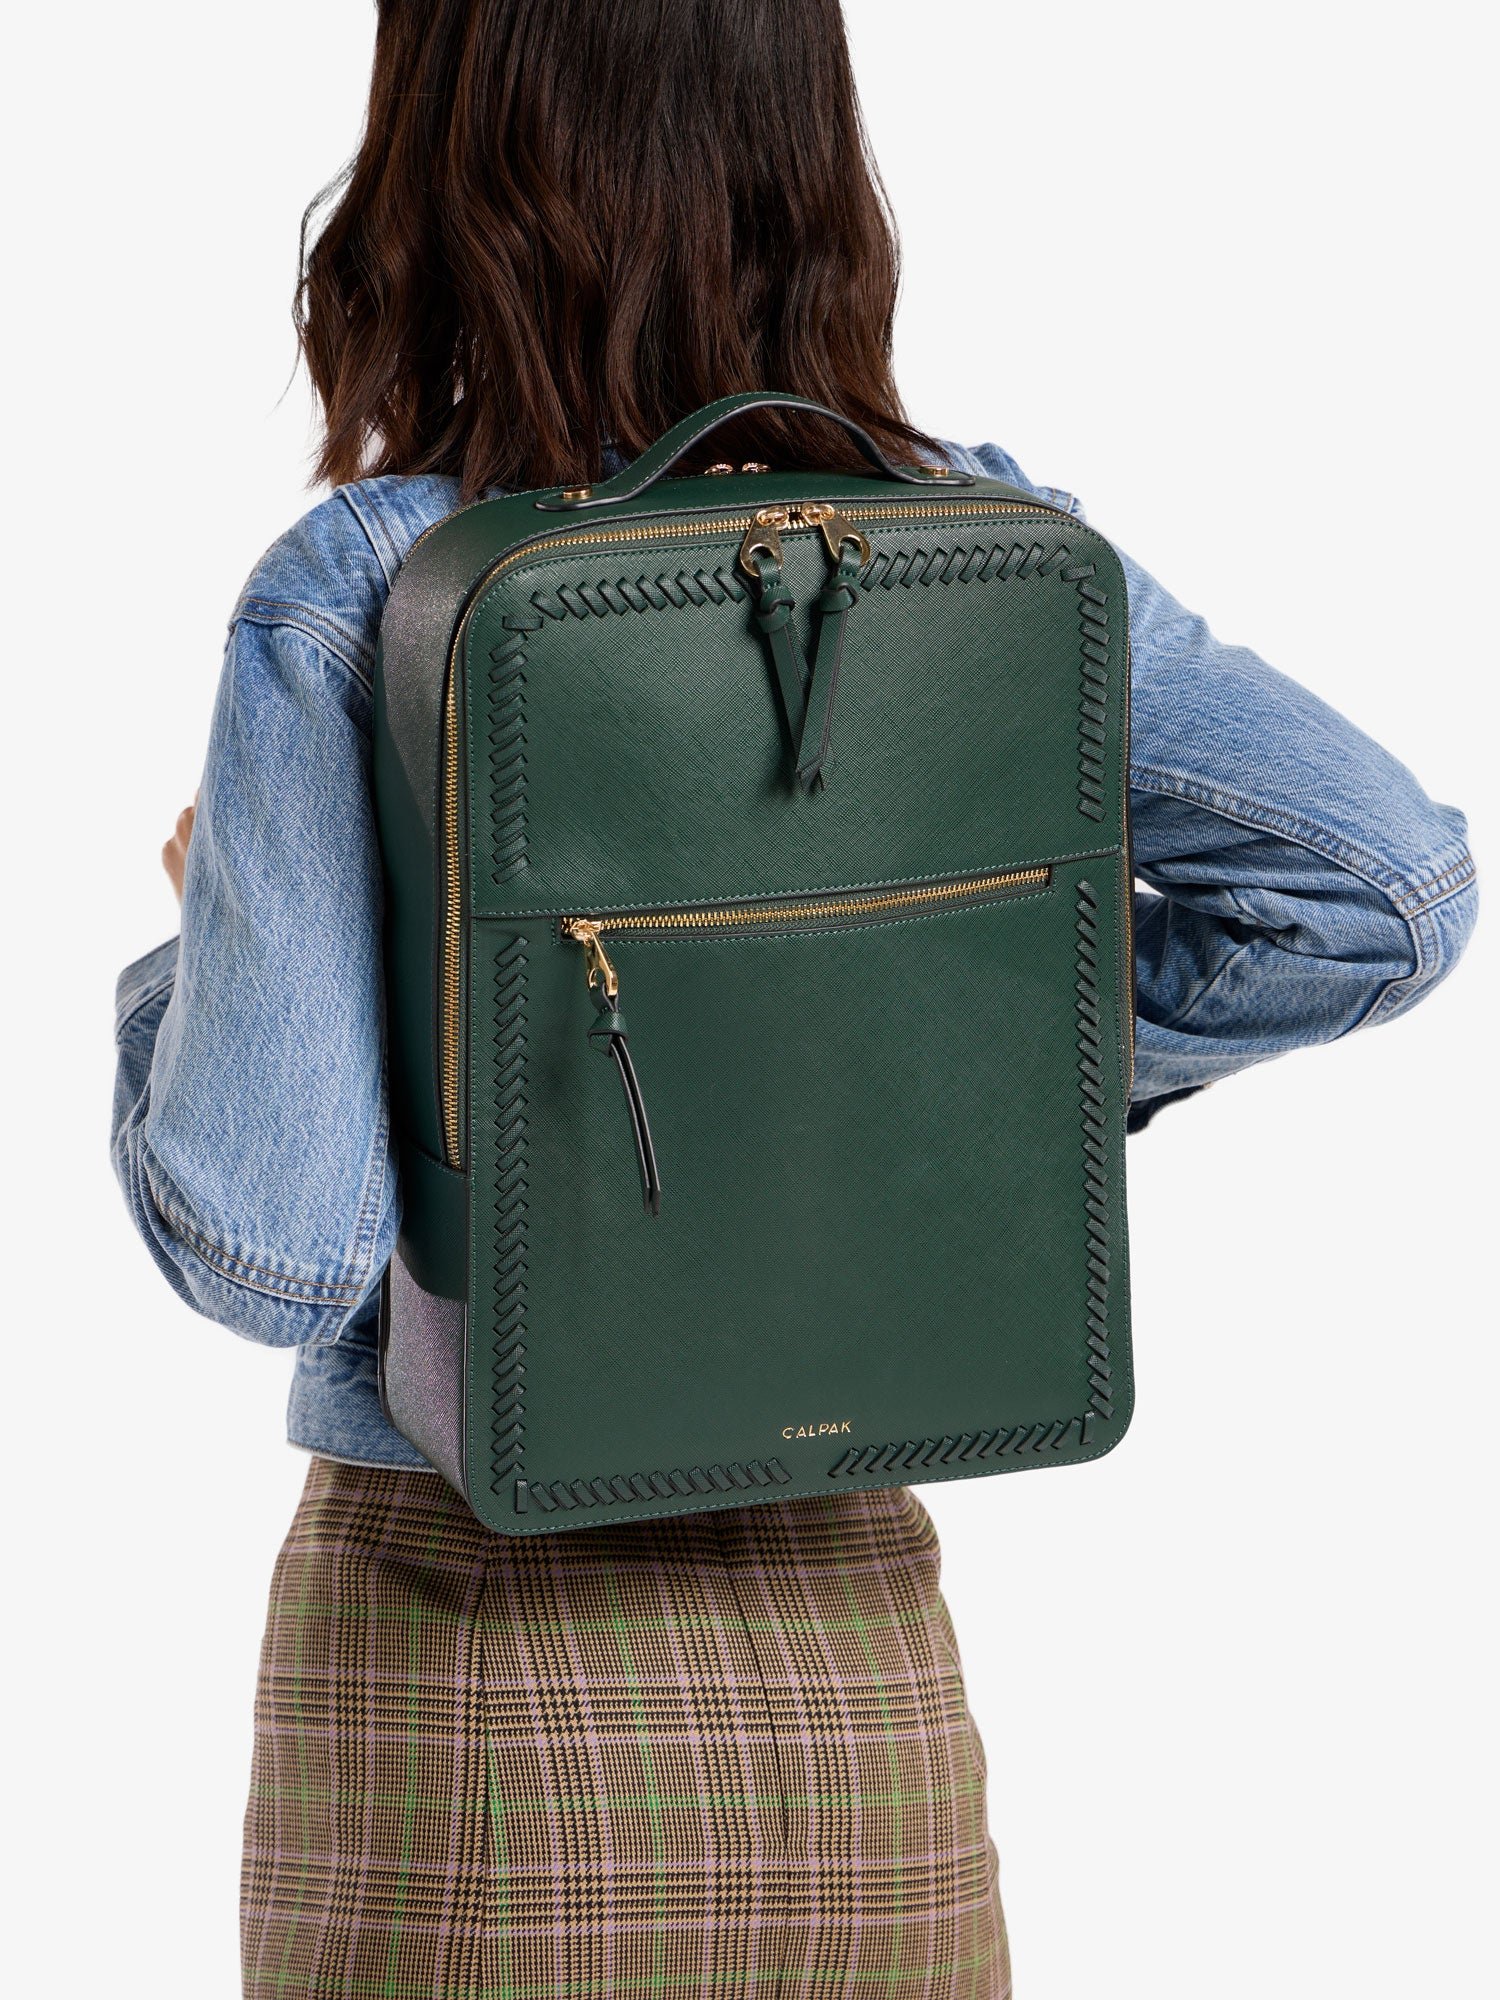 Kaya 17 inch Laptop Backpack